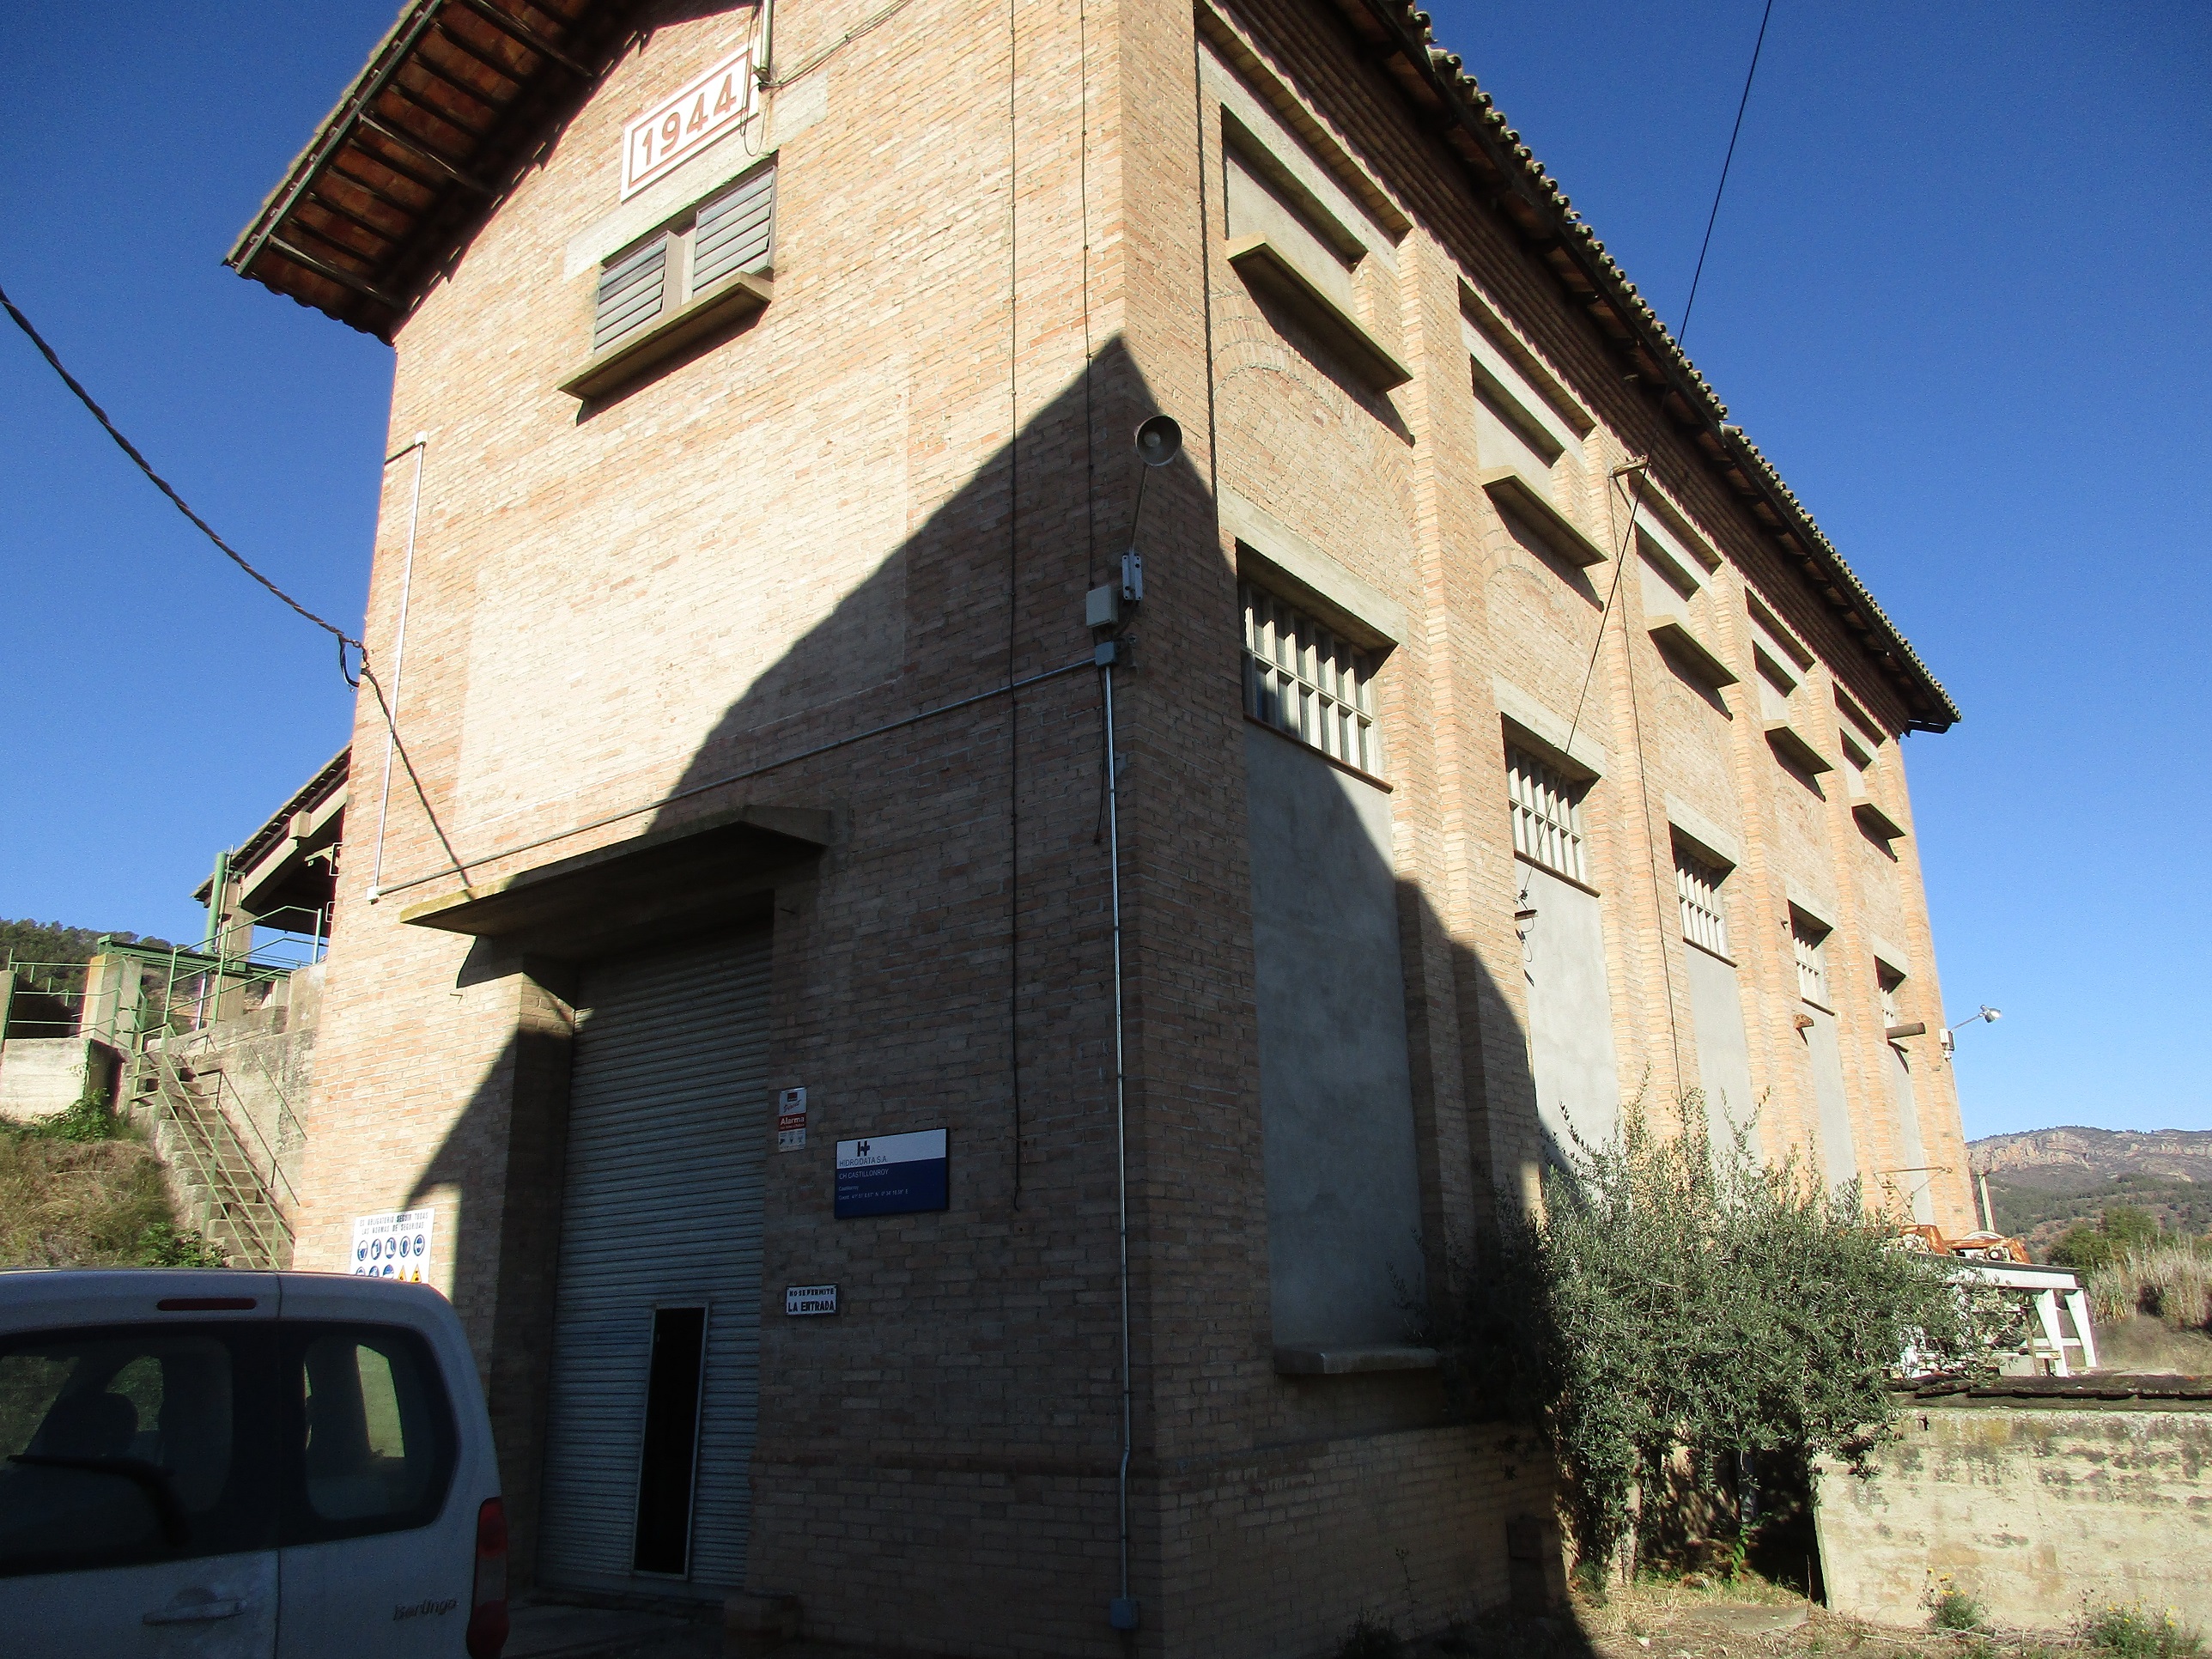 La central hidroeléctrica de Castillonroy (Huesca) revierte al Estado tras la finalización del plazo de su derecho concesional